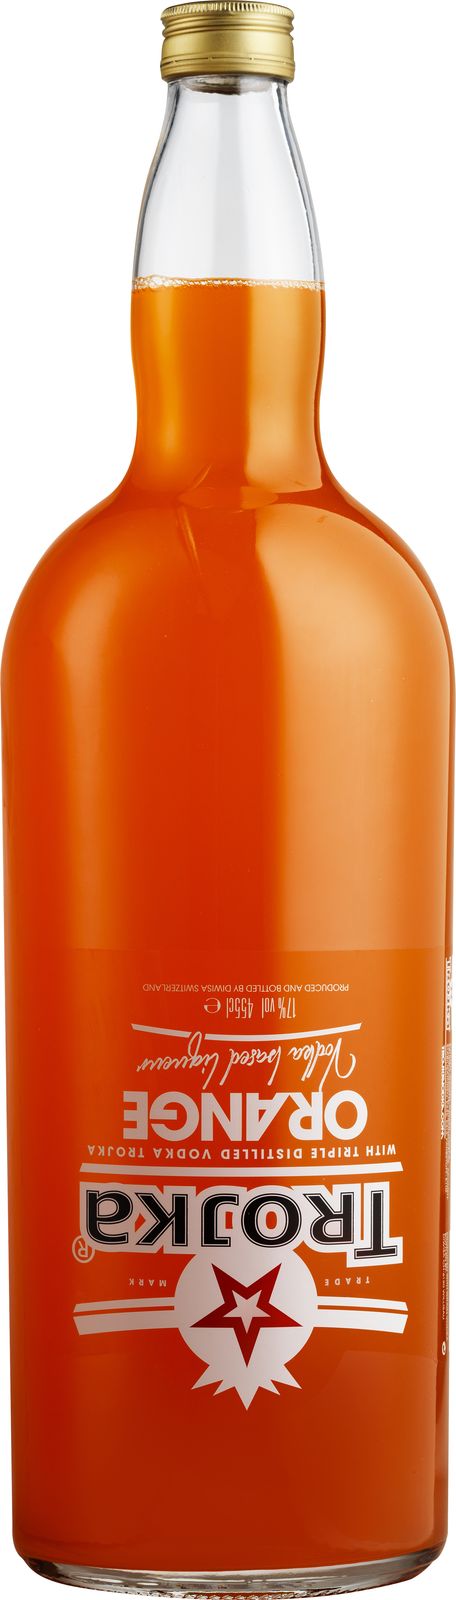 Trojka orange 40%
Vodka 